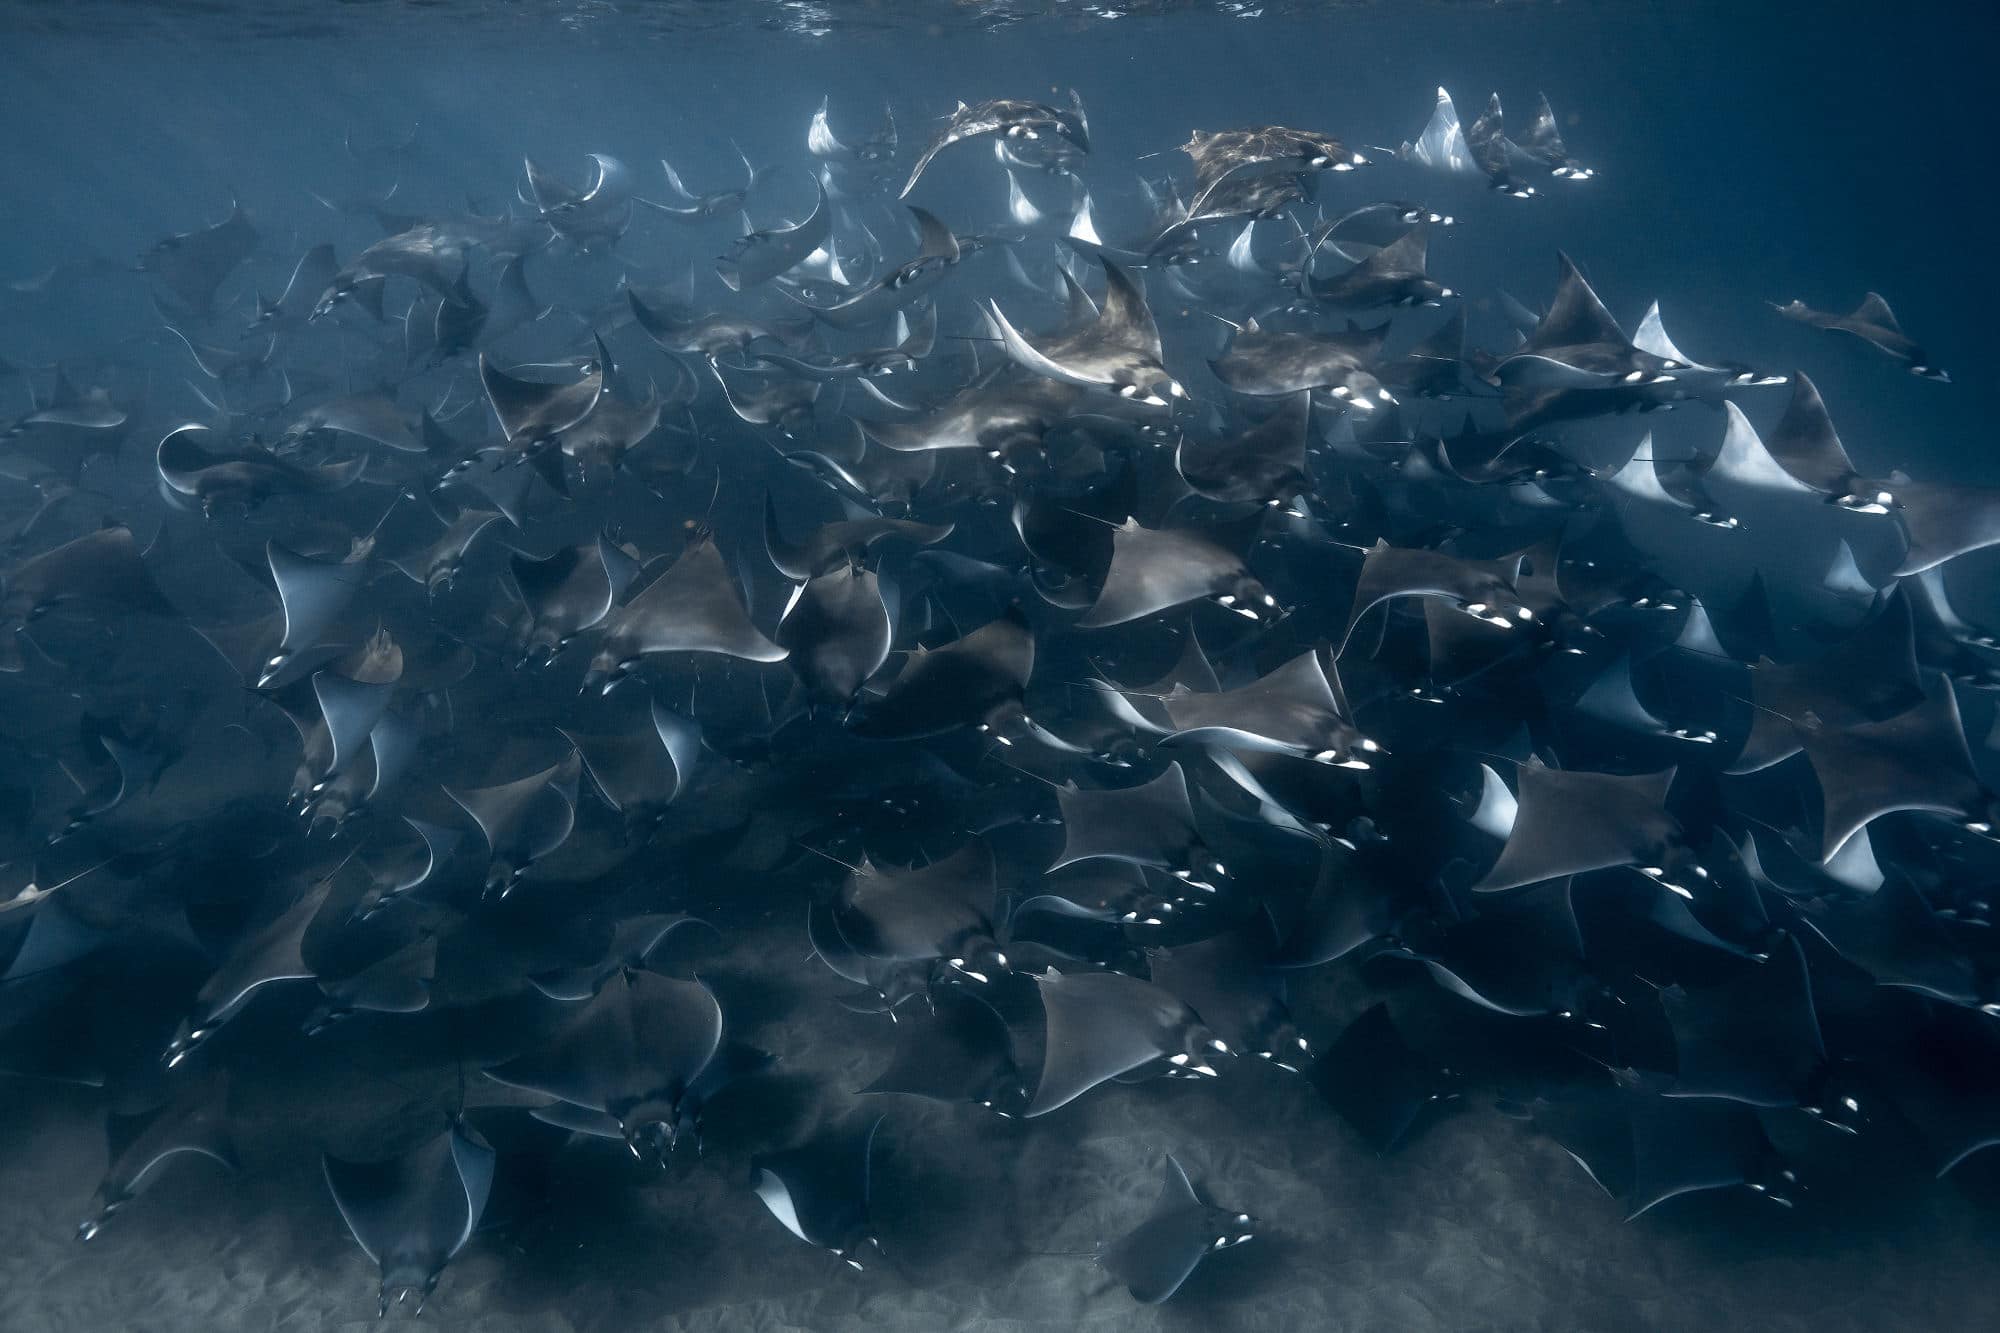 Orca Sea of Cortez